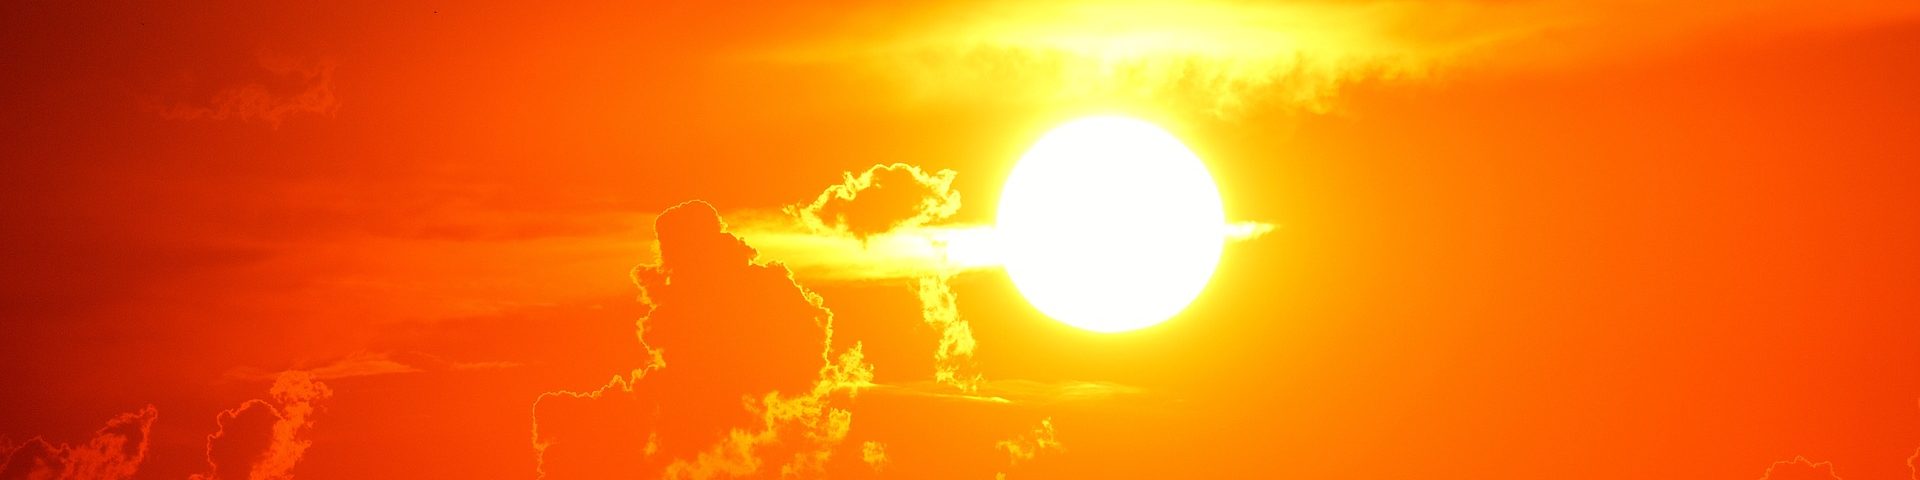 Die Sonne fungiert als energiereicher Kernreaktor. Er verbrennt den Wasserstoff und produziert daraus Helium, der uns mit Wärme und Energie versorgt.